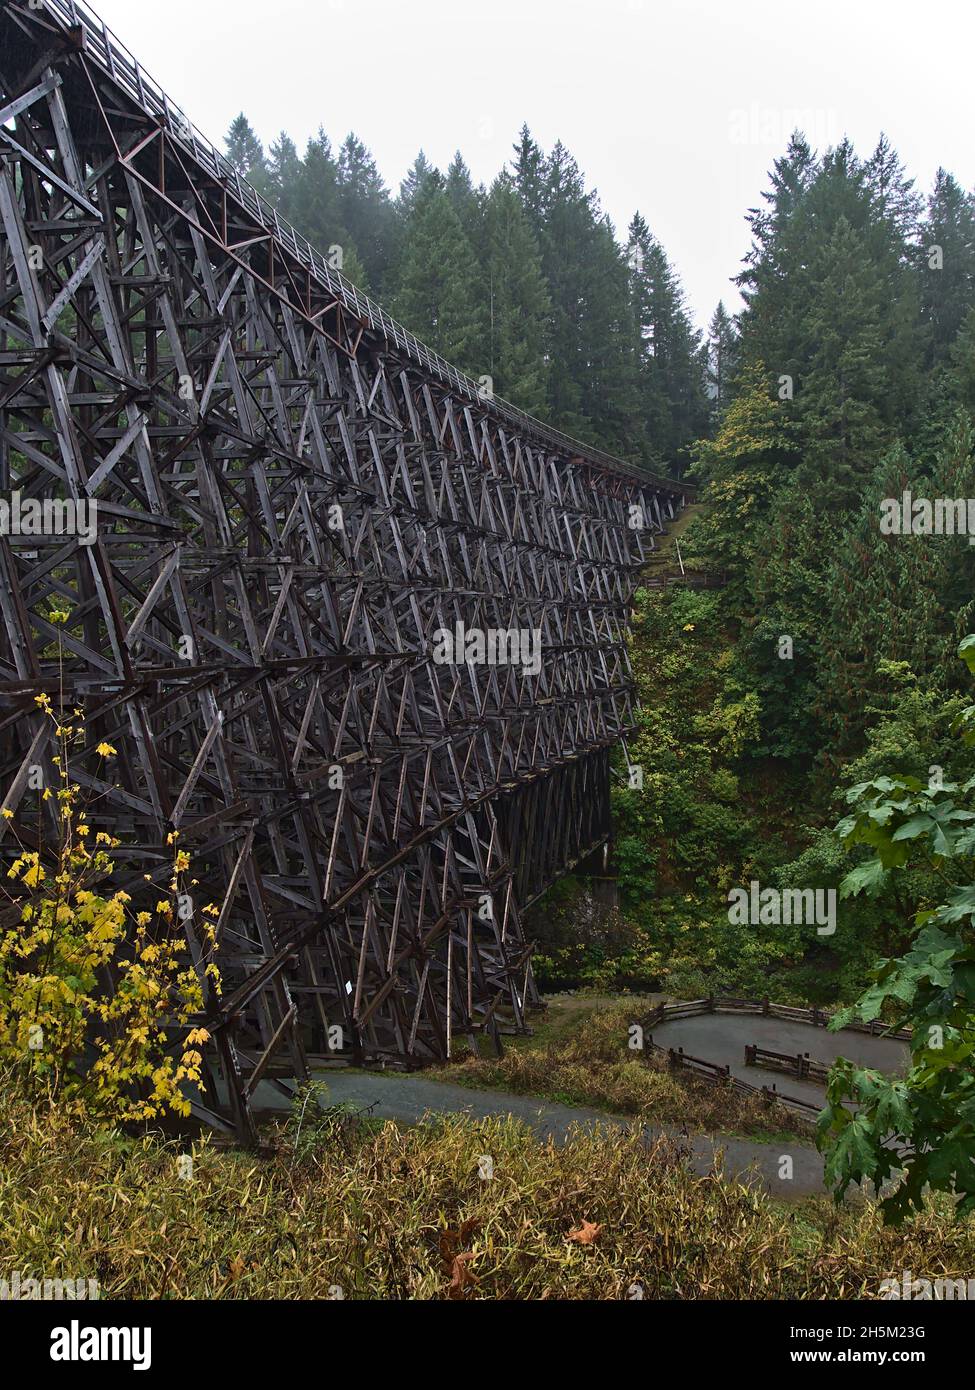 Magnifique paysage avec vue portrait du pont ferroviaire historique en bois Kinsol Trestle situé sur l'île de Vancouver, Colombie-Britannique, Canada. Banque D'Images